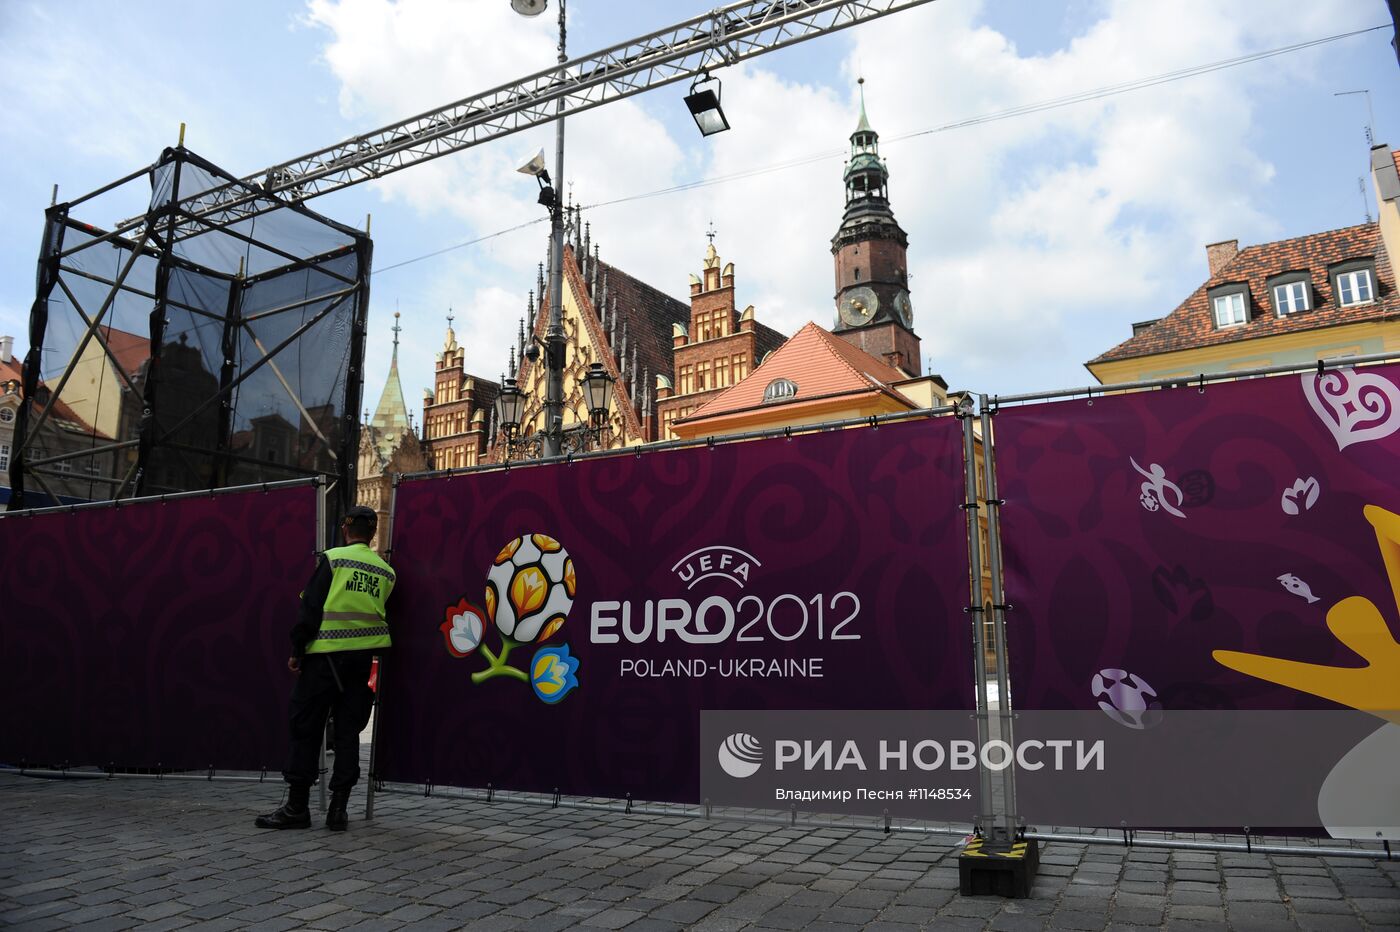 Вроцлав перед началом проведения ЕВРО - 2012